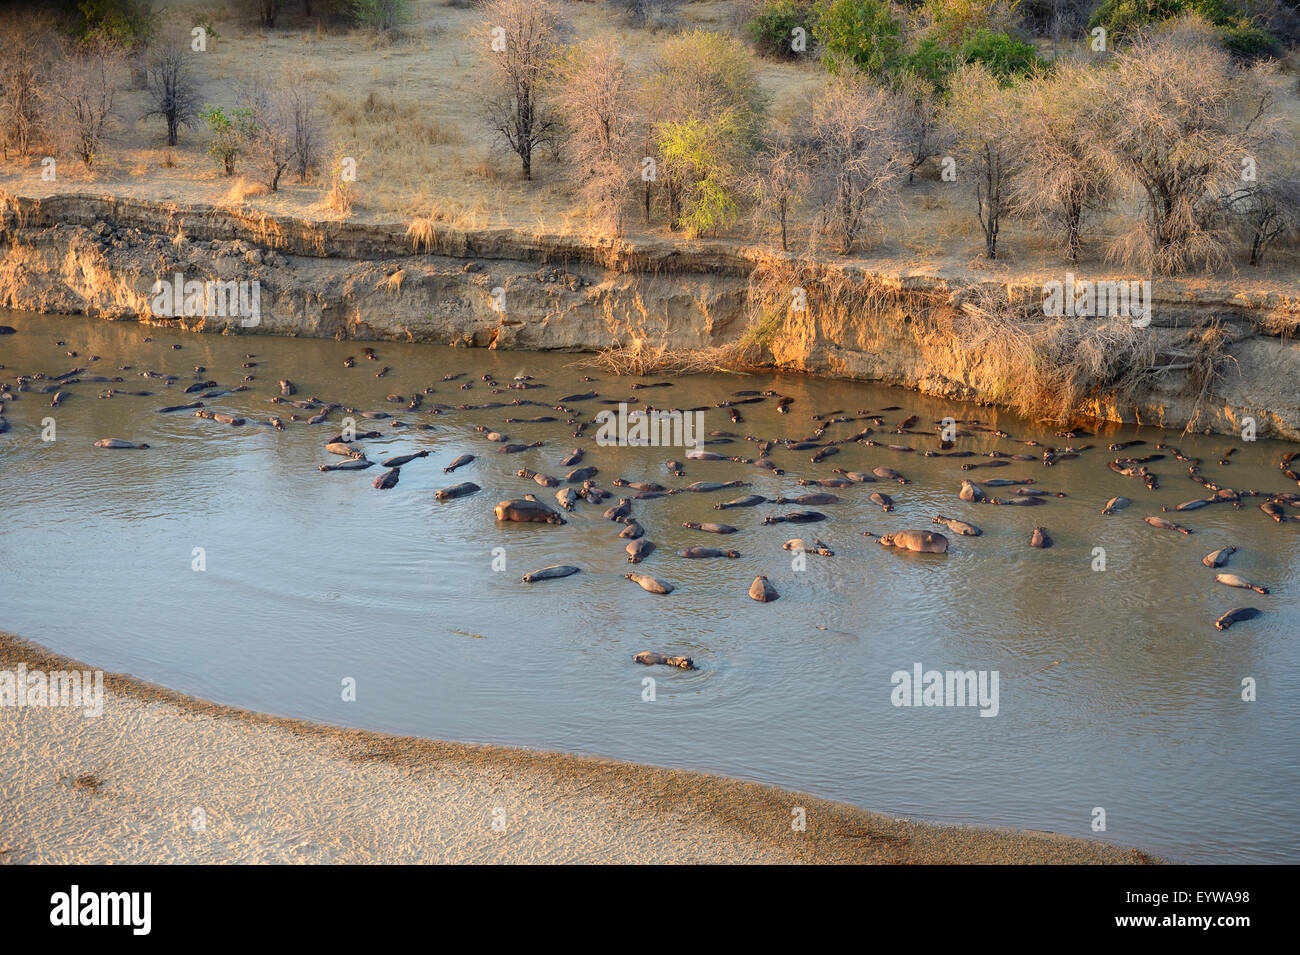 Flusspferde (Hippopotamus Amphibicus) im flachen Wasser vor steilen Ufer, Morgenlicht, Luftaufnahme, Luangwa Fluss Stockfoto